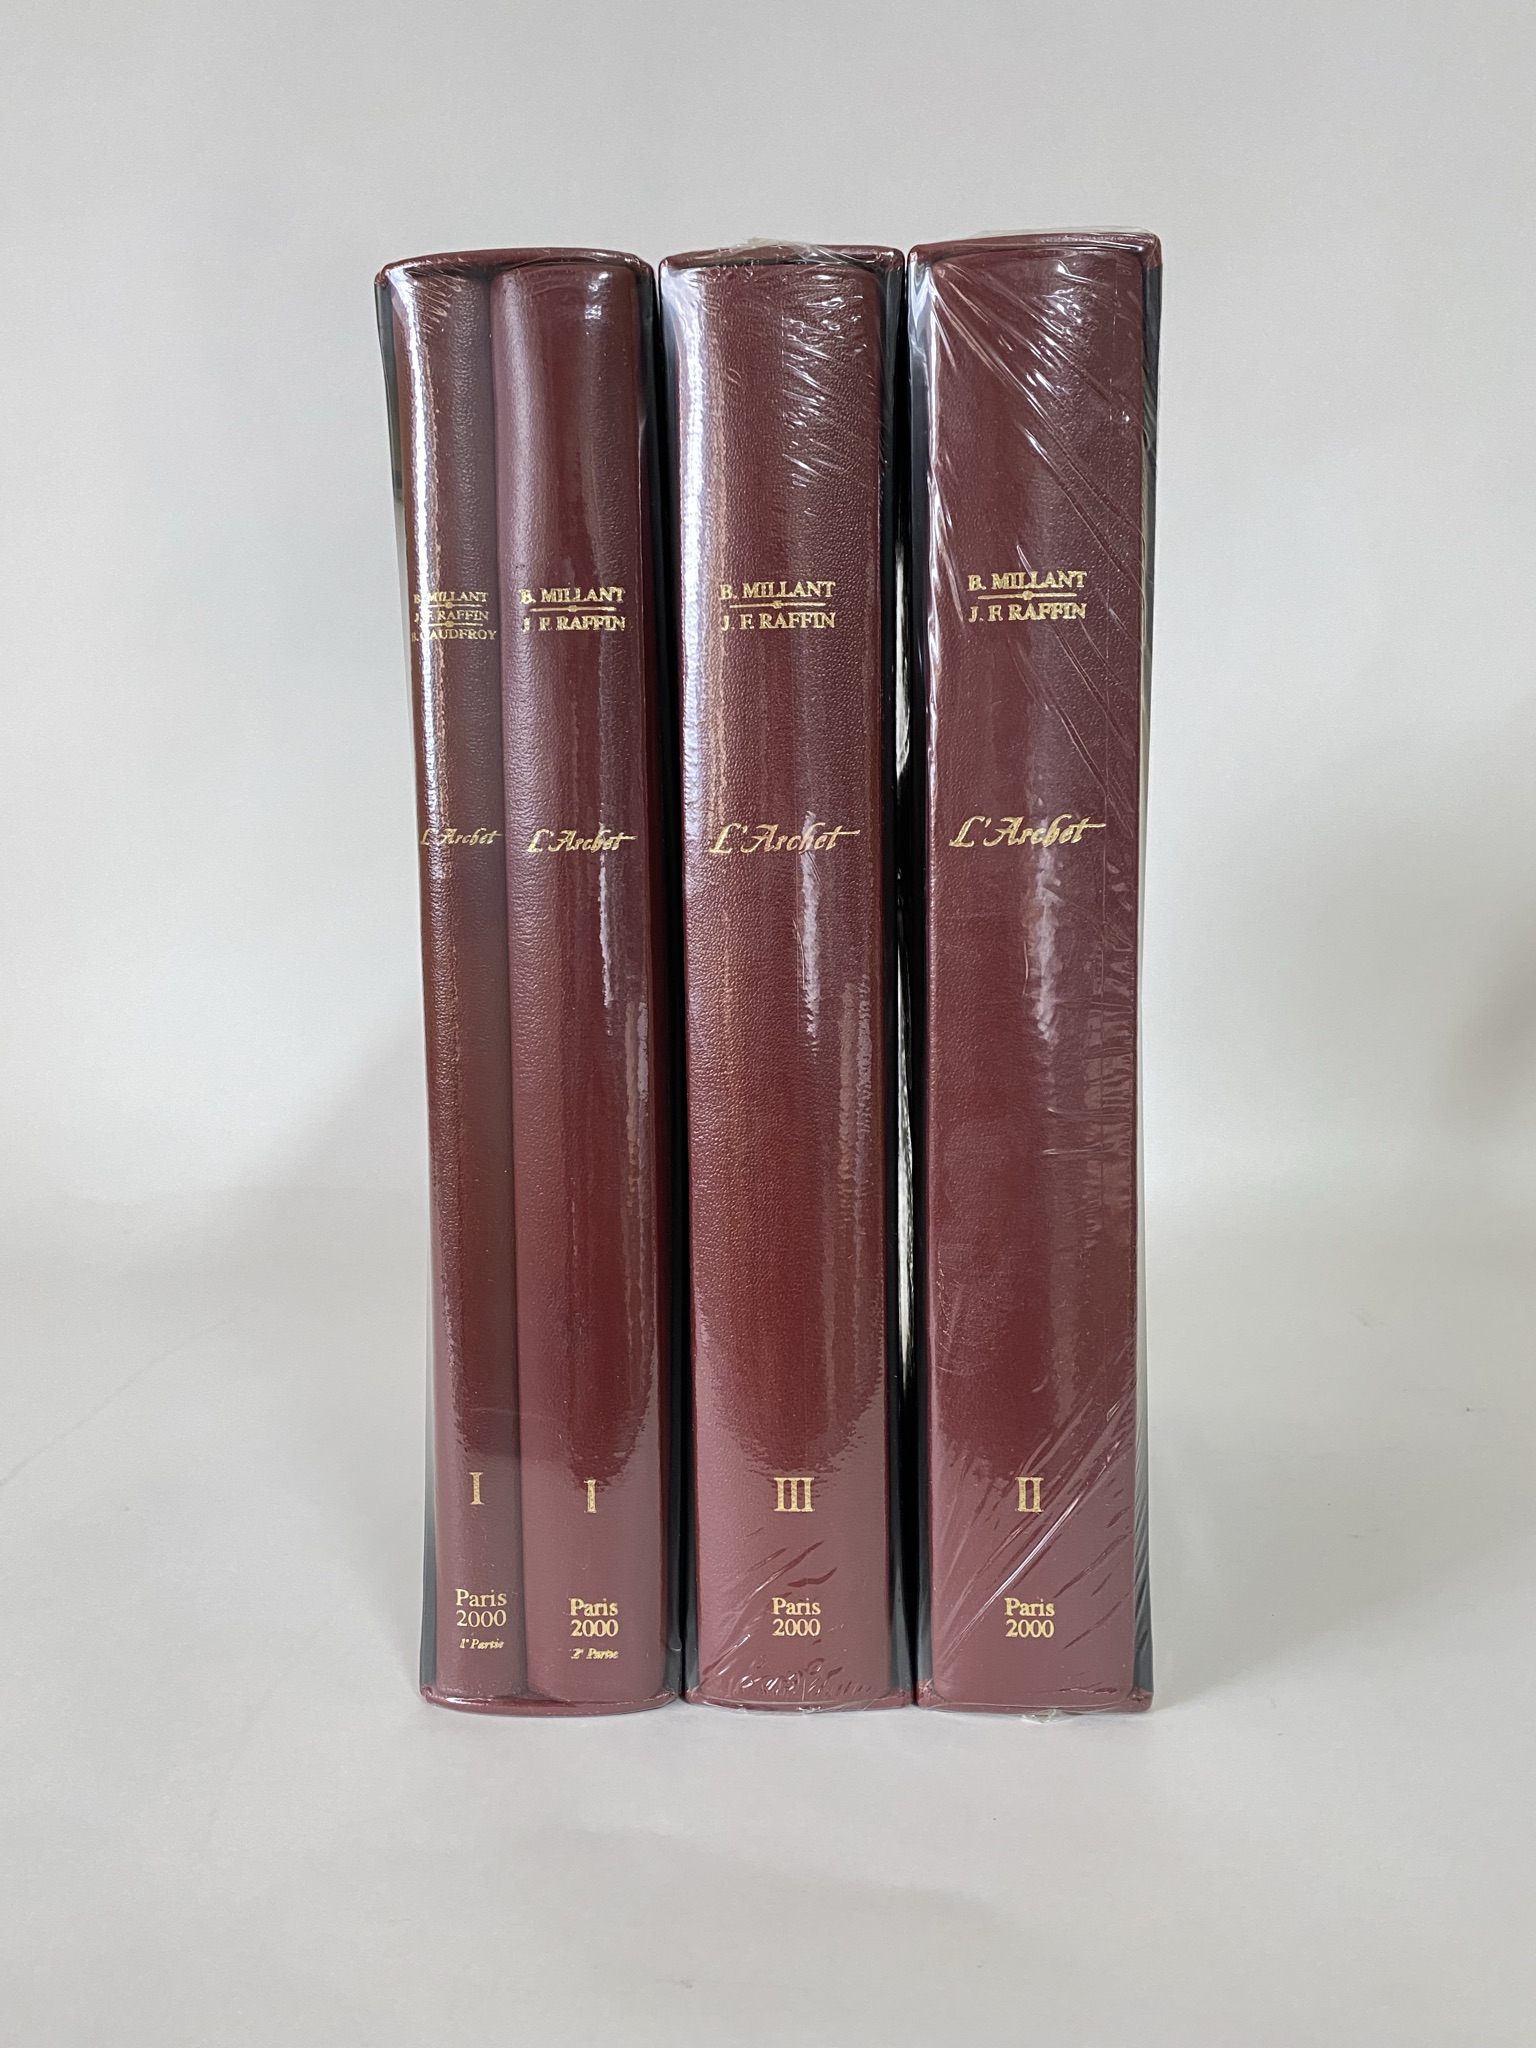 L Archet by B. Millant & J.F. Raffin - Prestige Edition